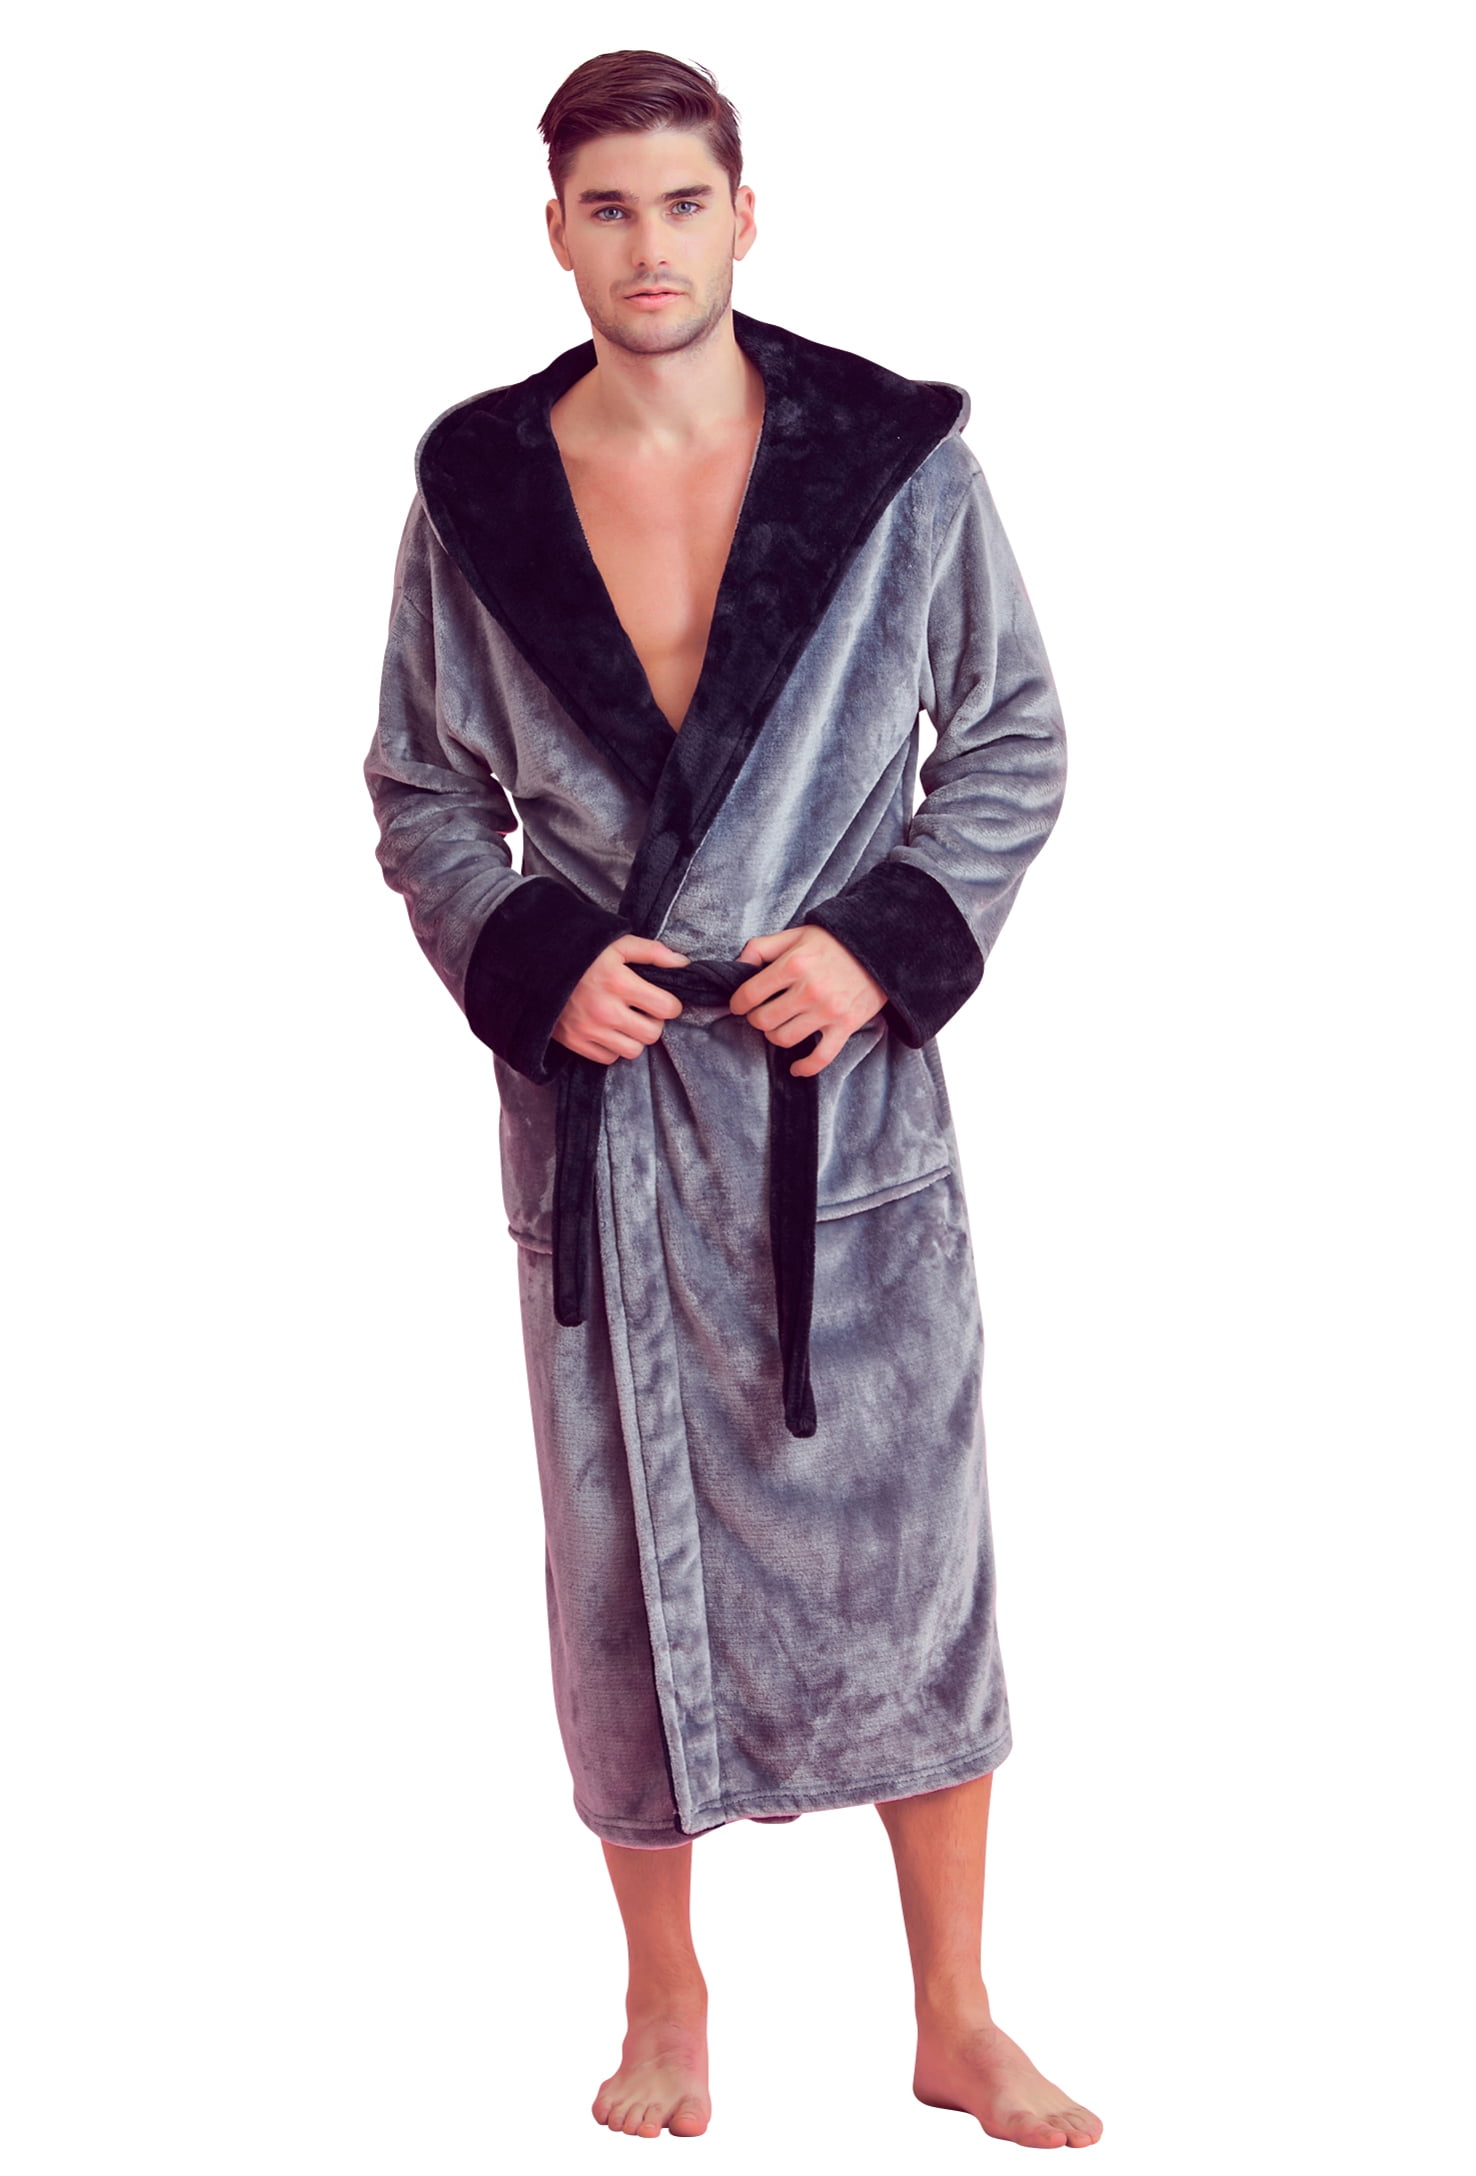 R Peeling Senator Soft Touch Linen Men's Bath Robe – Hooded Shower Robe – Polyester  Full-Length Warm Kimono - Walmart.com